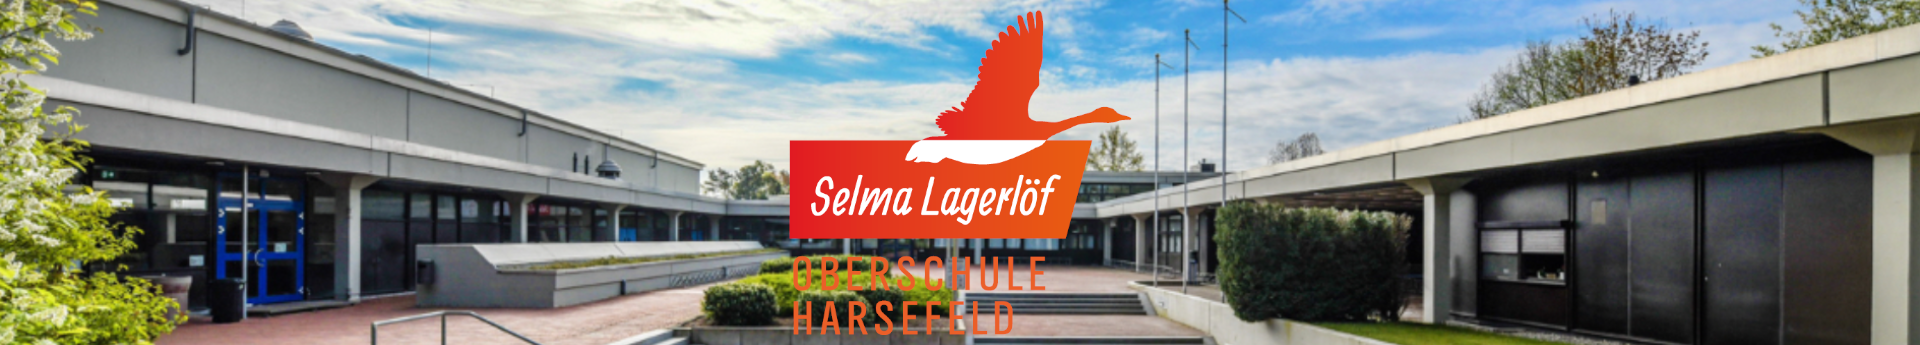 Selma Lagerlöf Oberschule Harsefeld Title Image